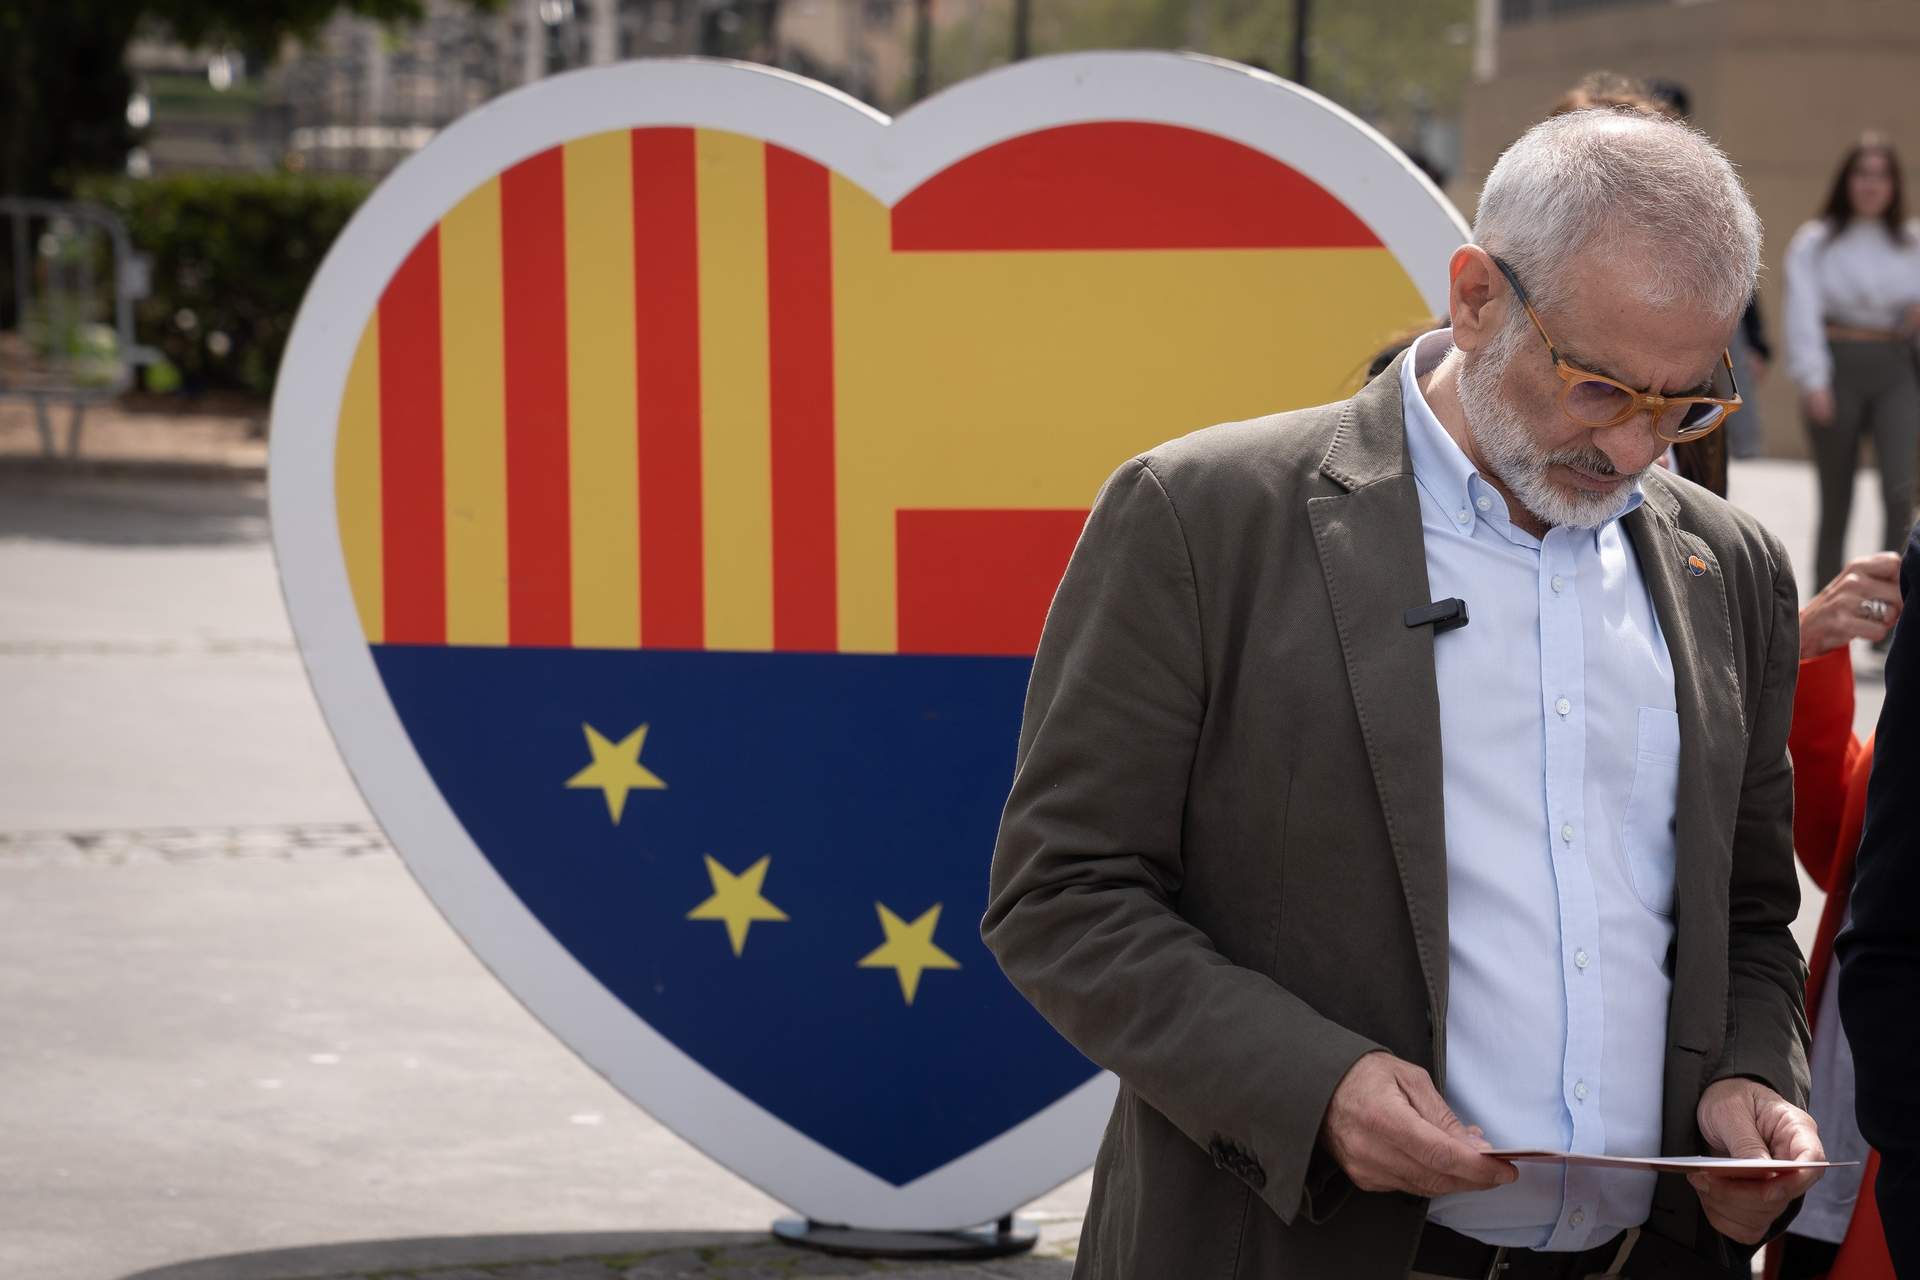 Ciudadanos culmina su desaparición en España quedando fuera del Parlamento de Cataluña, la CCAA donde nació